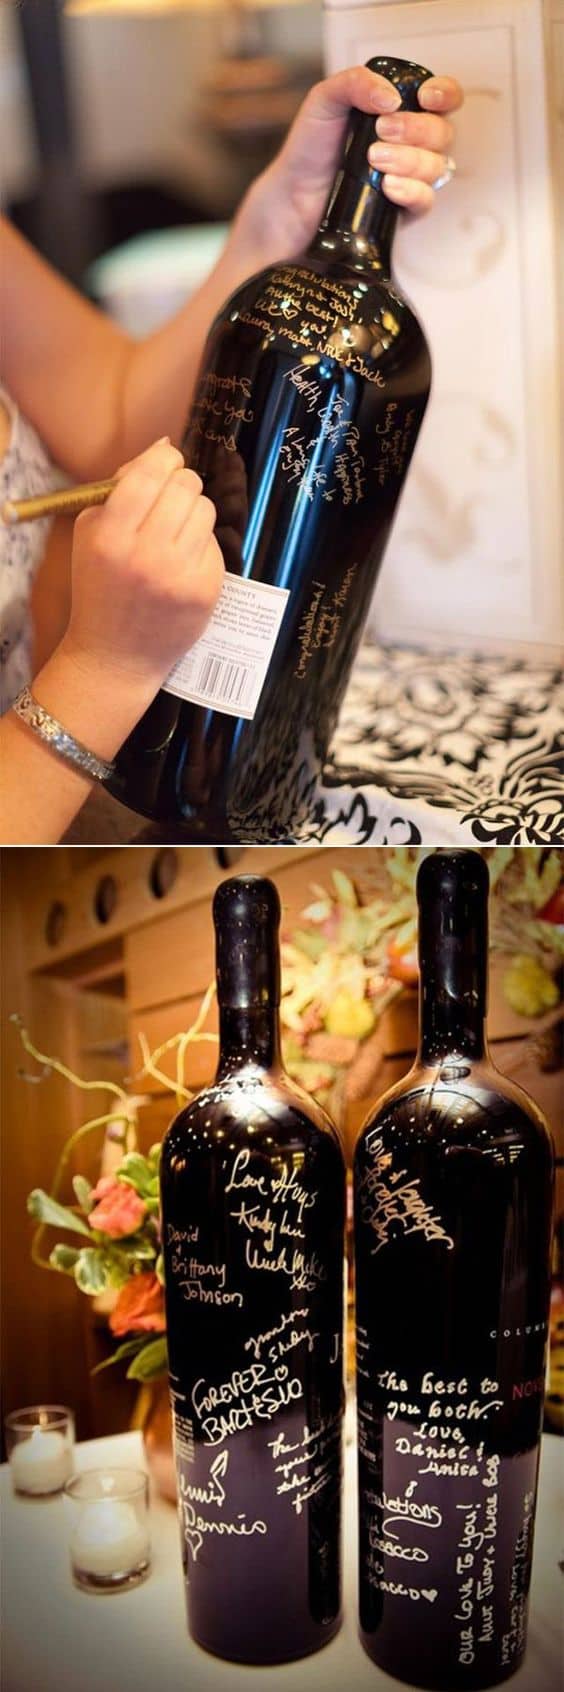 bottiglia vino come guestbook